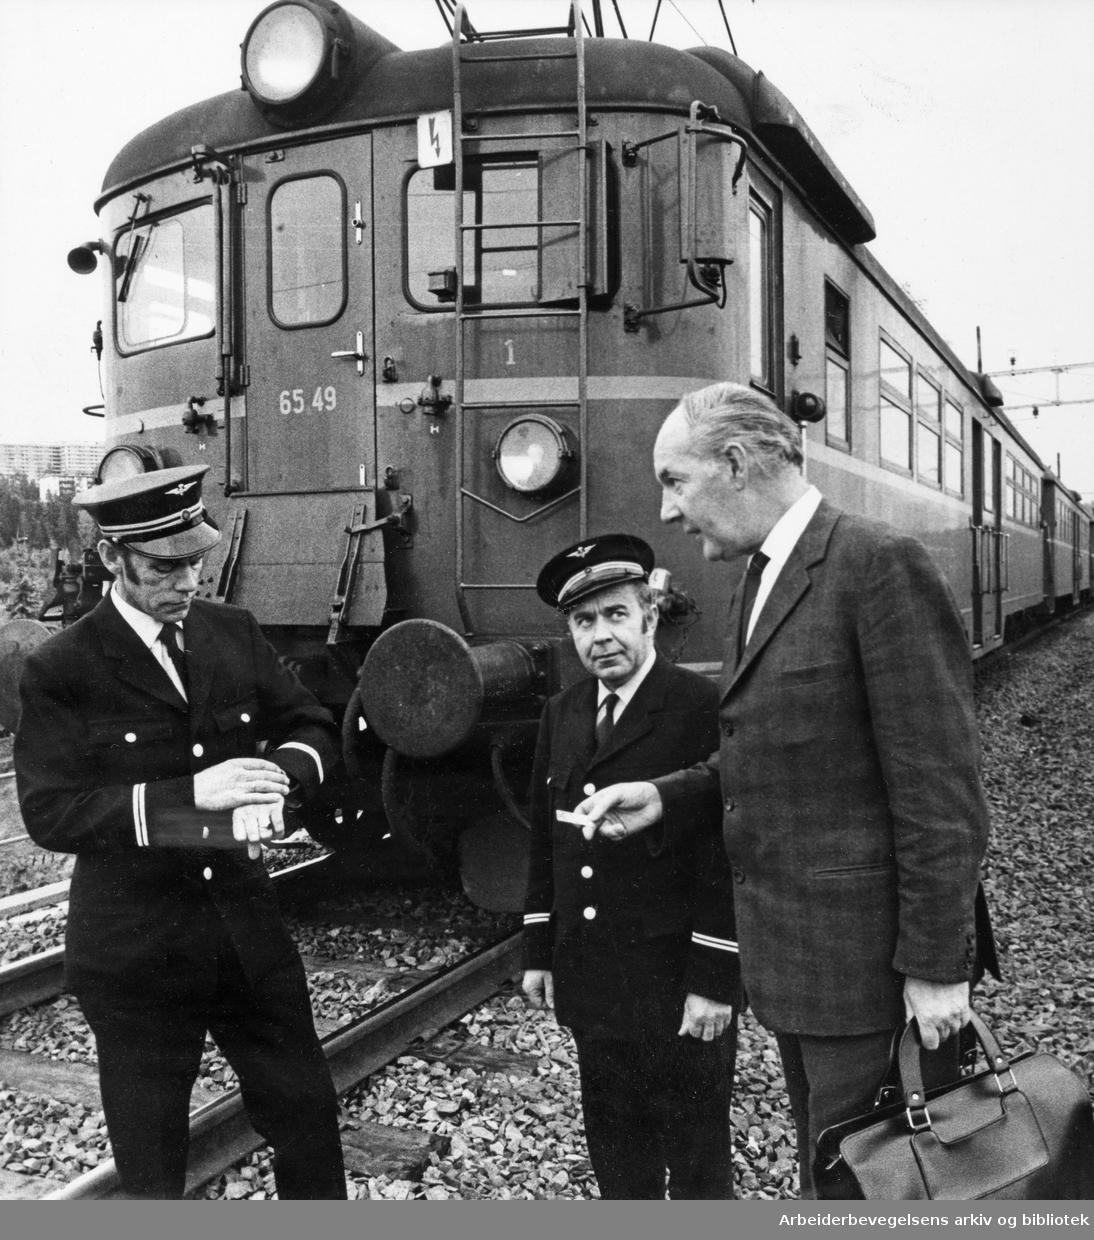 Landsomfattende LO-streik i 15 minutter mot Borten-regjeringens budsjett 7. Oktober 1970. Lokfører Arne Skogly og konduktør Arne Nilsen. Til høyre, passasjer Teddy Kloster. Bildet er tatt like ved Alnabru stasjon.